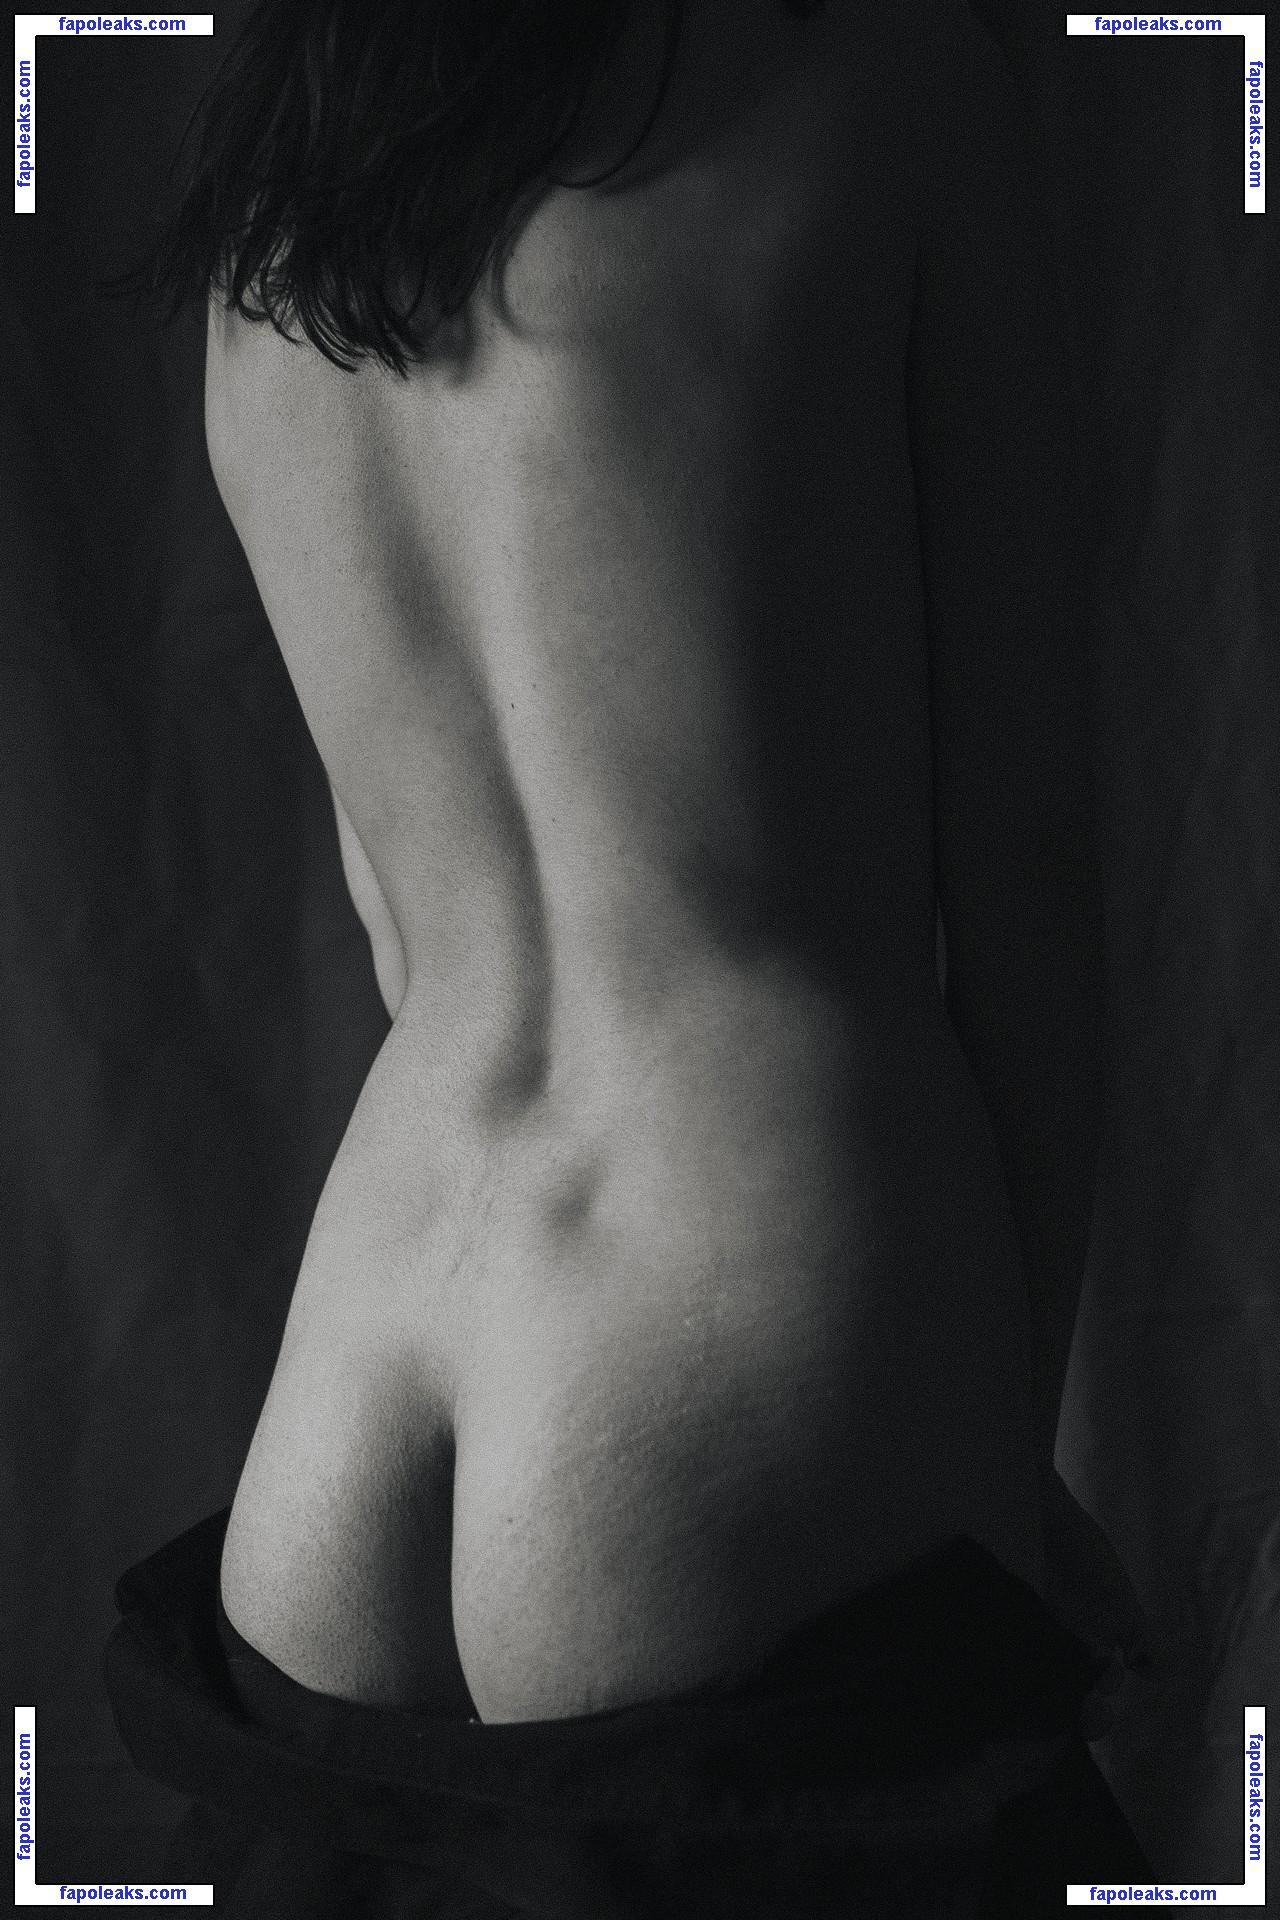 Valeria Shashenok / valeriahaver / valerisssh nude photo #0022 from OnlyFans